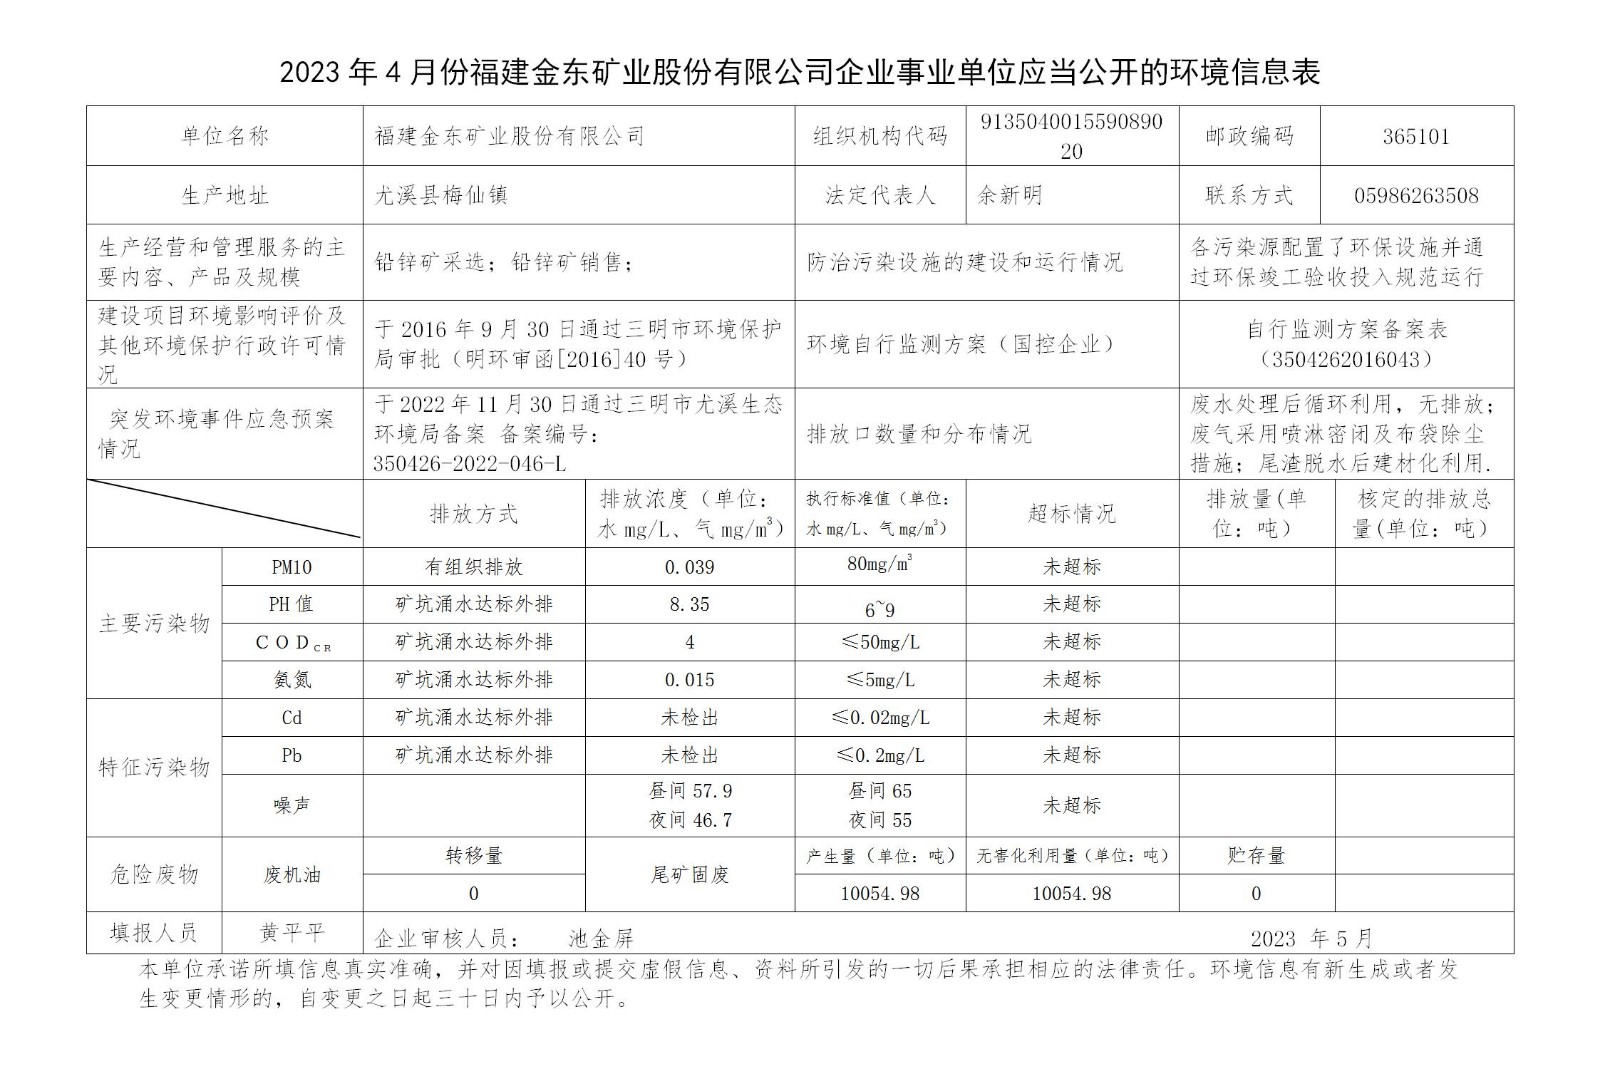 2023年4月份c7官网入口|中国集团有限公司官网企业事业单位应当公开的环境信息表_01.jpg